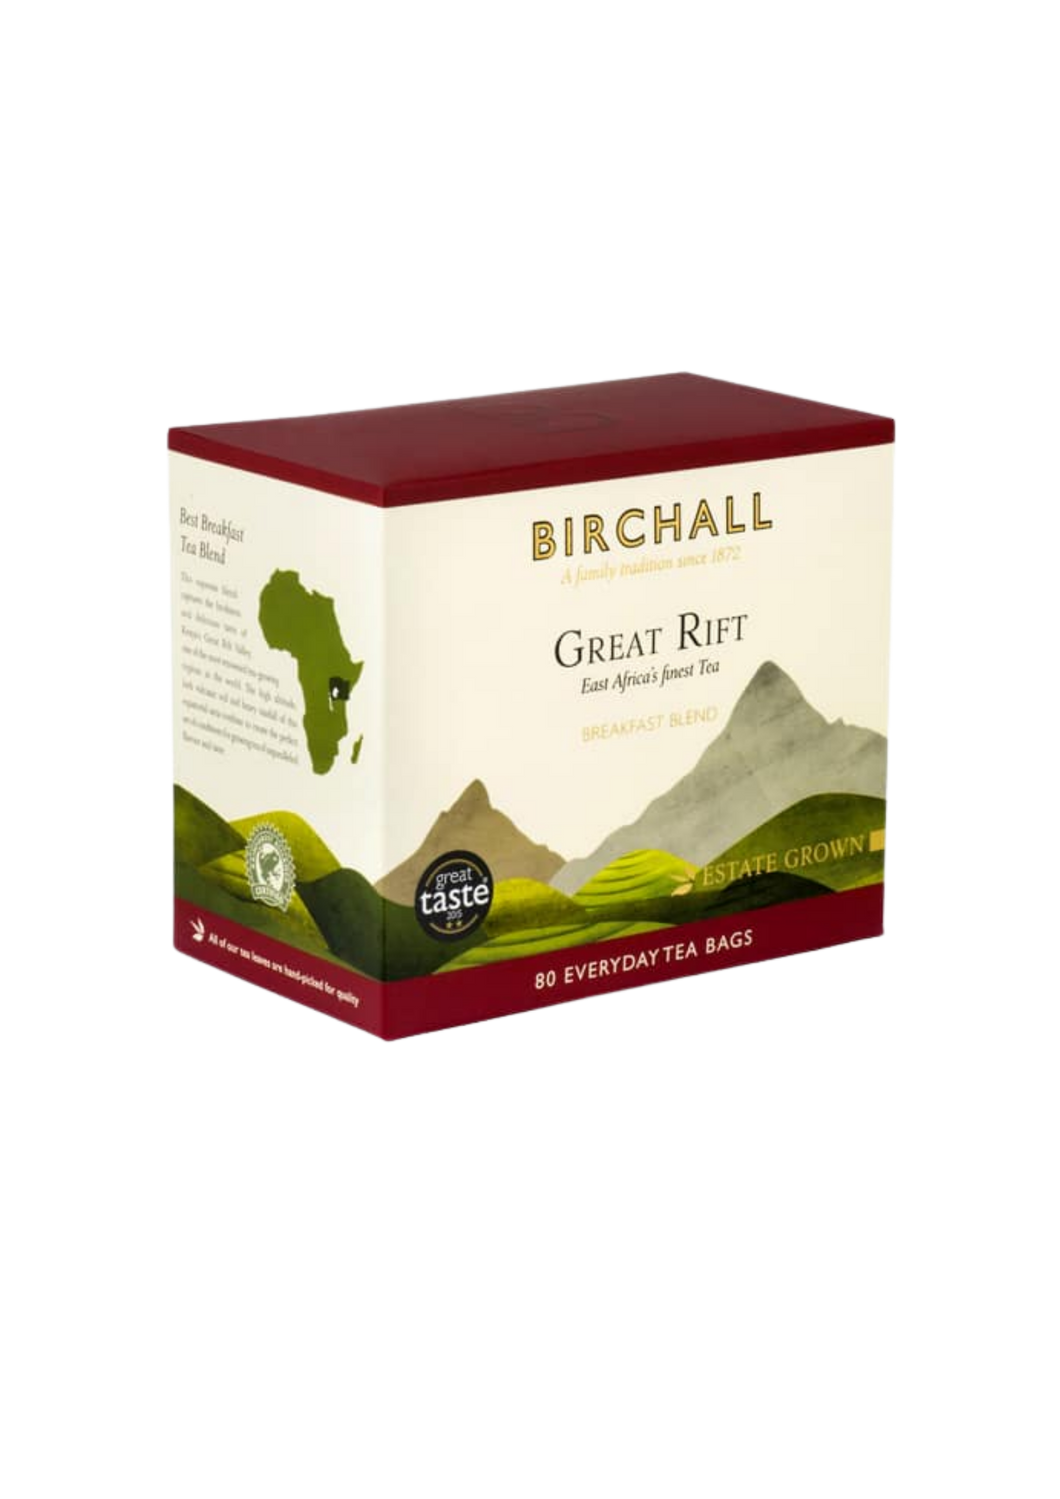 BIRCHALL GREAT RIFT BREAKFAST BLEND 80 TEA BAGS